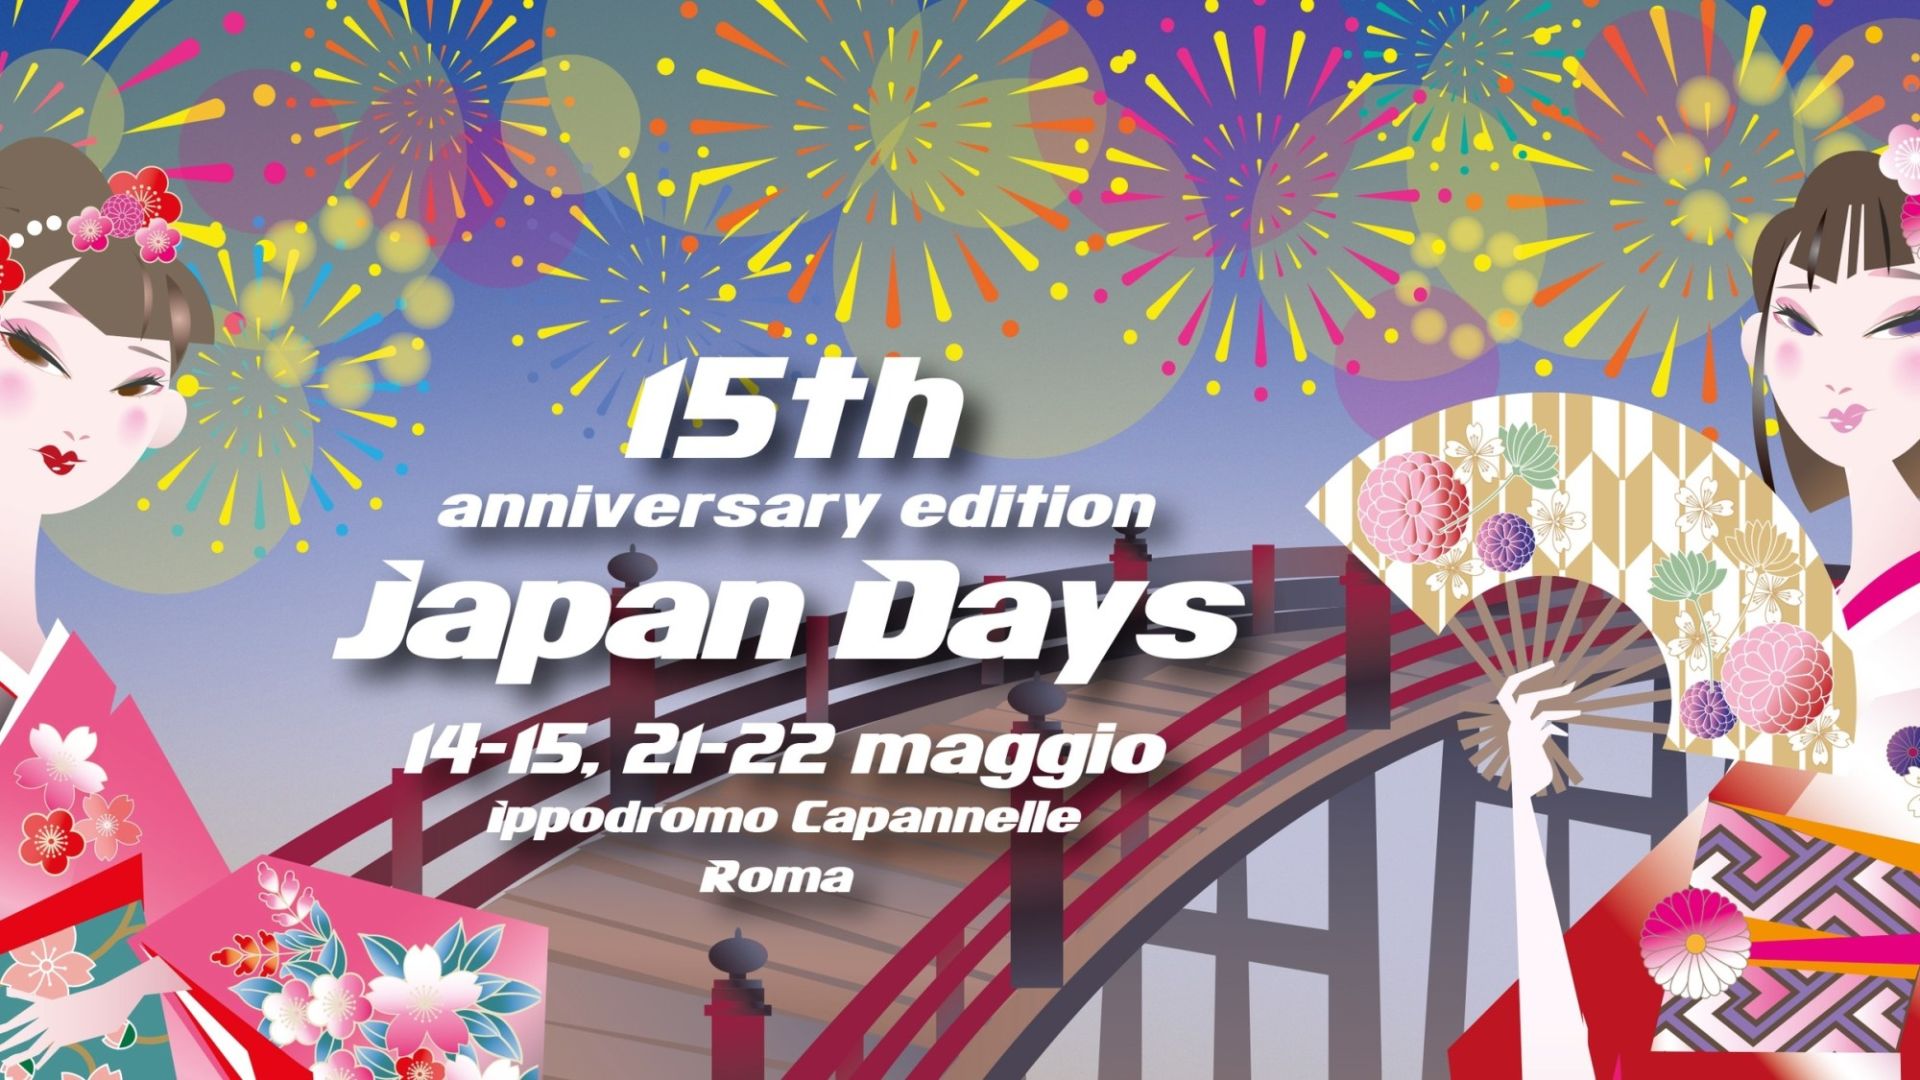 Mercatino Giapponese / Japan Days 15th Anniversary